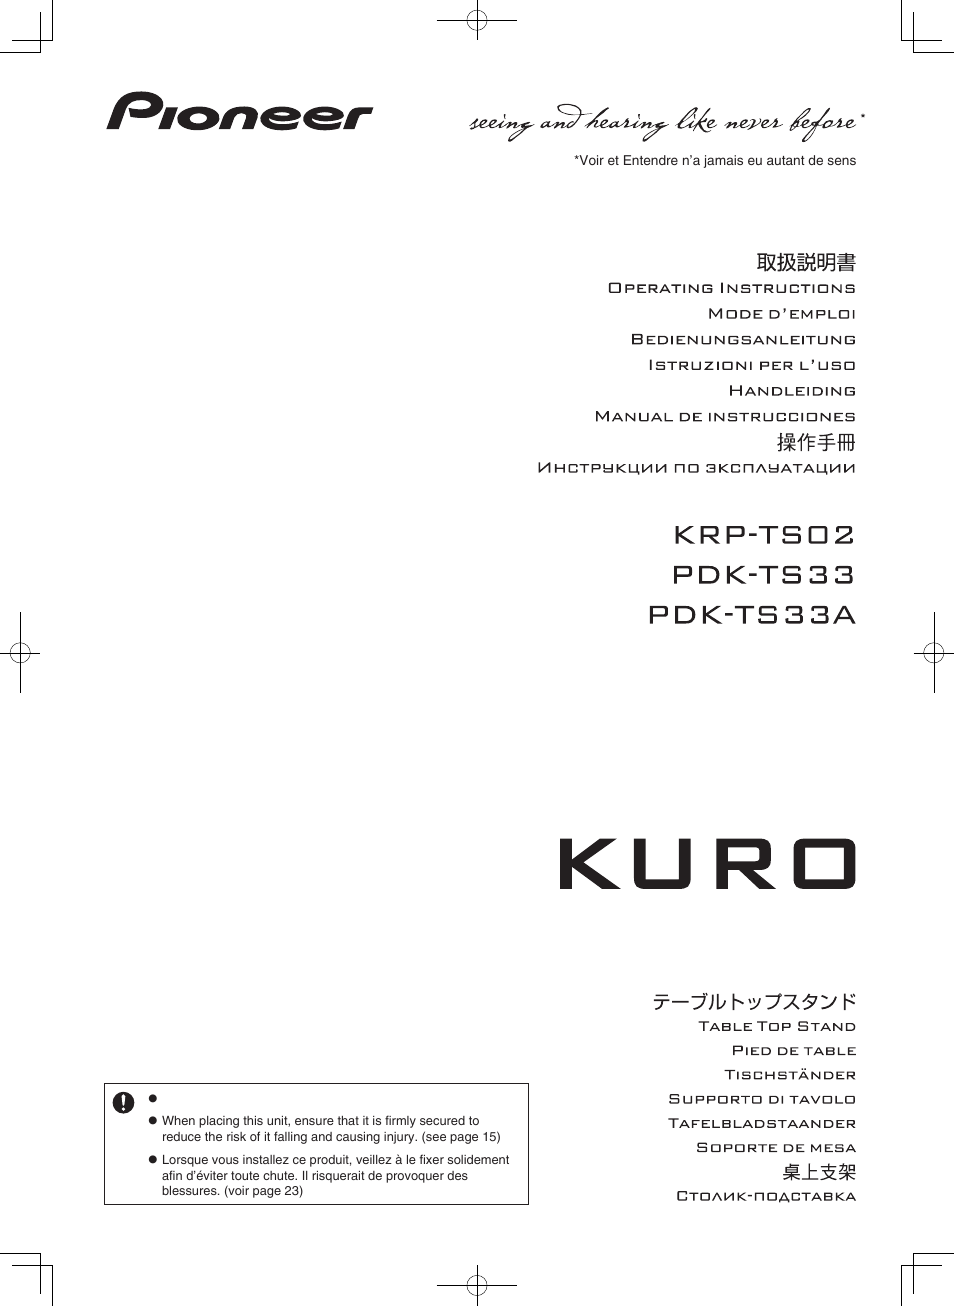 Pioneer KURO PDK-TS33 User Manual | 73 pages